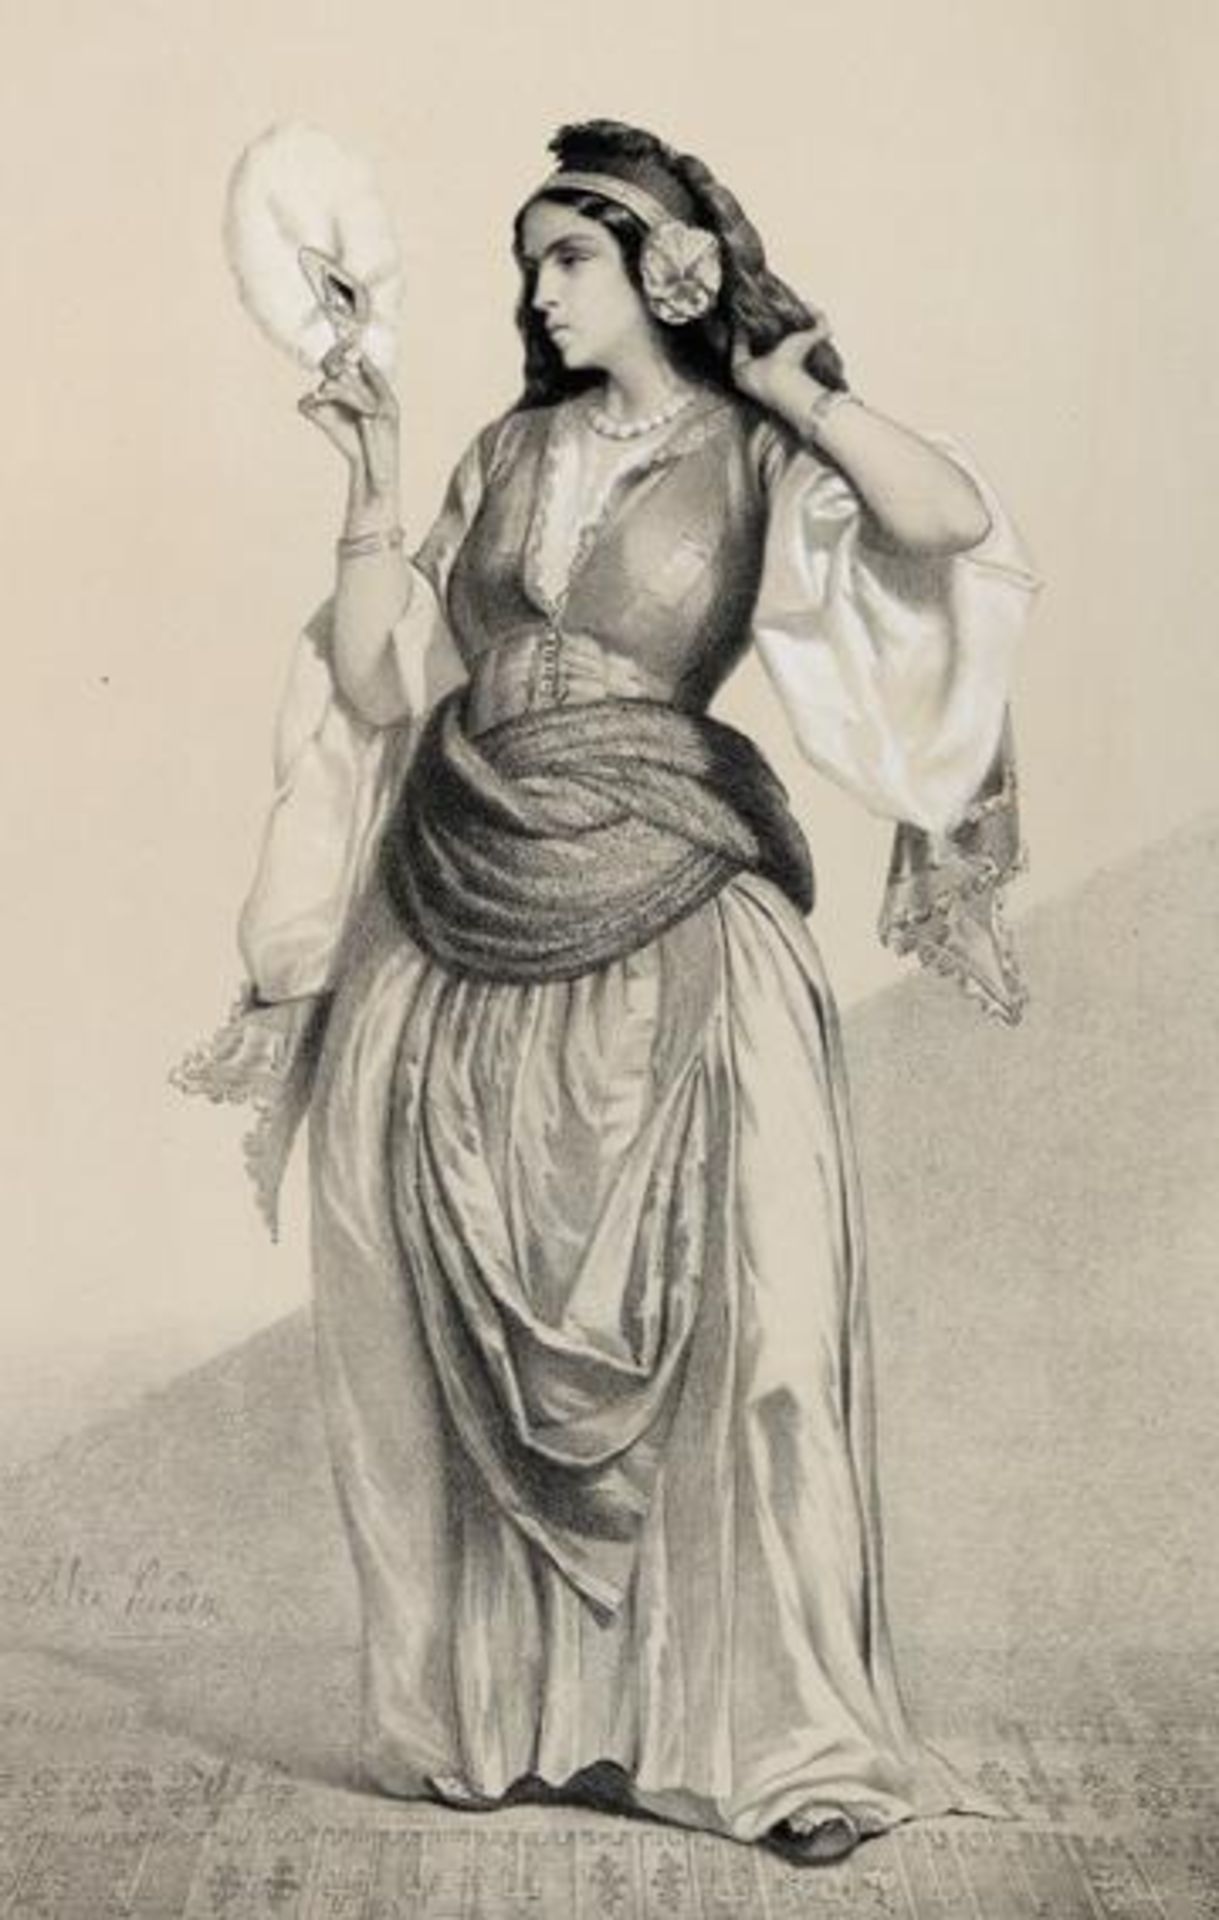 Bida,A. u. E.Barbot.Souvenirs d'Egypte. Paris, Lemercier ca. 1850. Gr.Fol. Mit getönt. lithogr. Tit.